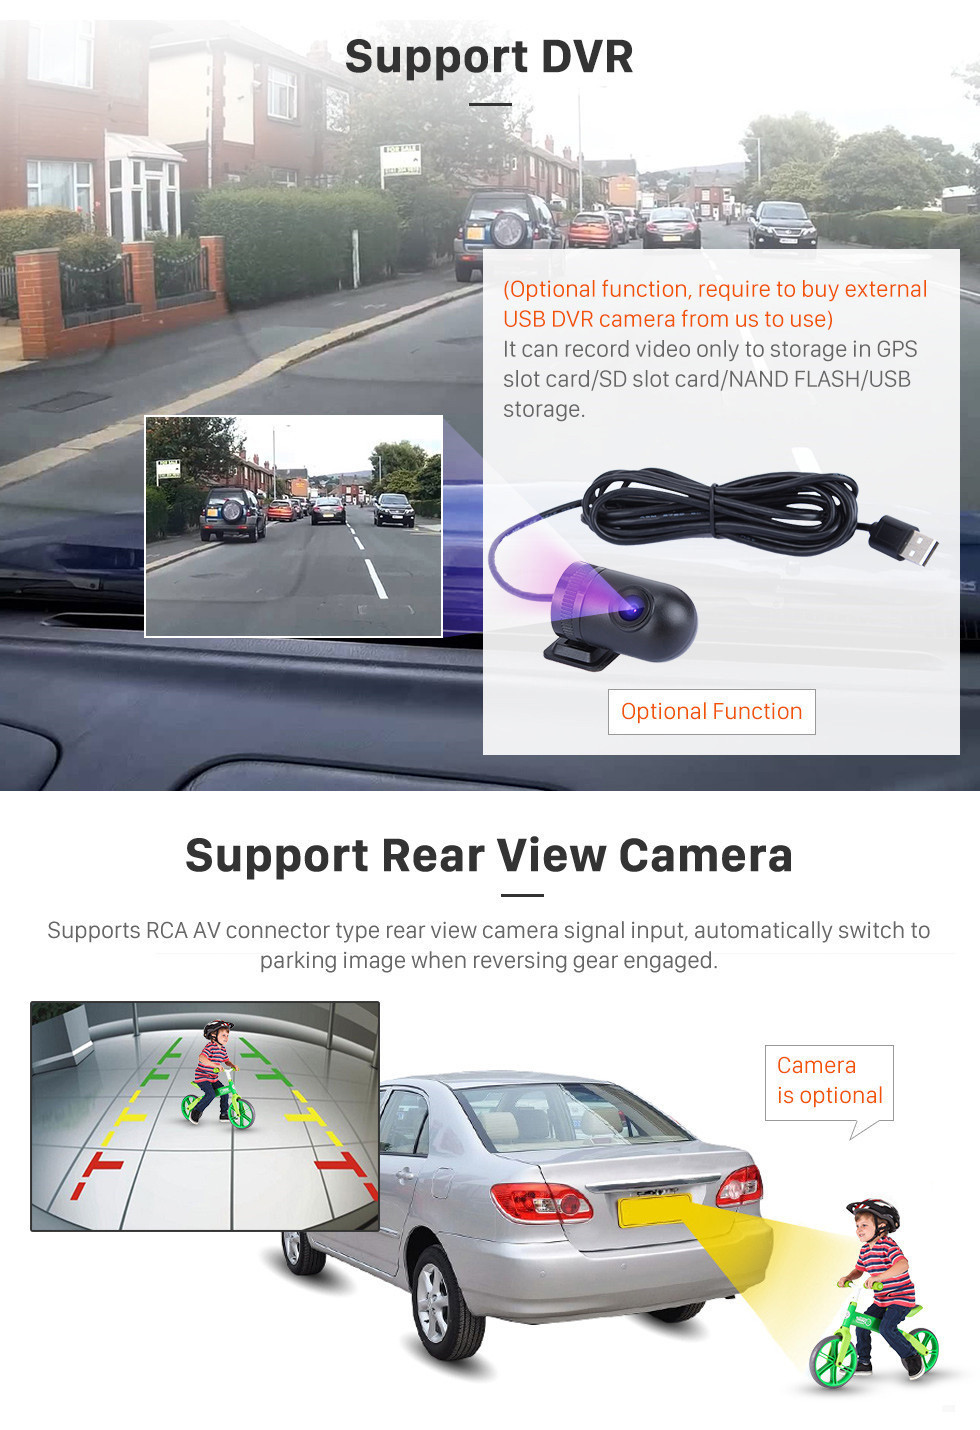 Seicane OEM 10,1 pouces Android 11.0 Radio pour 2014 Peugeot 408 Bluetooth Wifi HD Navigation à écran tactile GPS Navigation USB support OBD2 TV numérique 4G SWC RDS